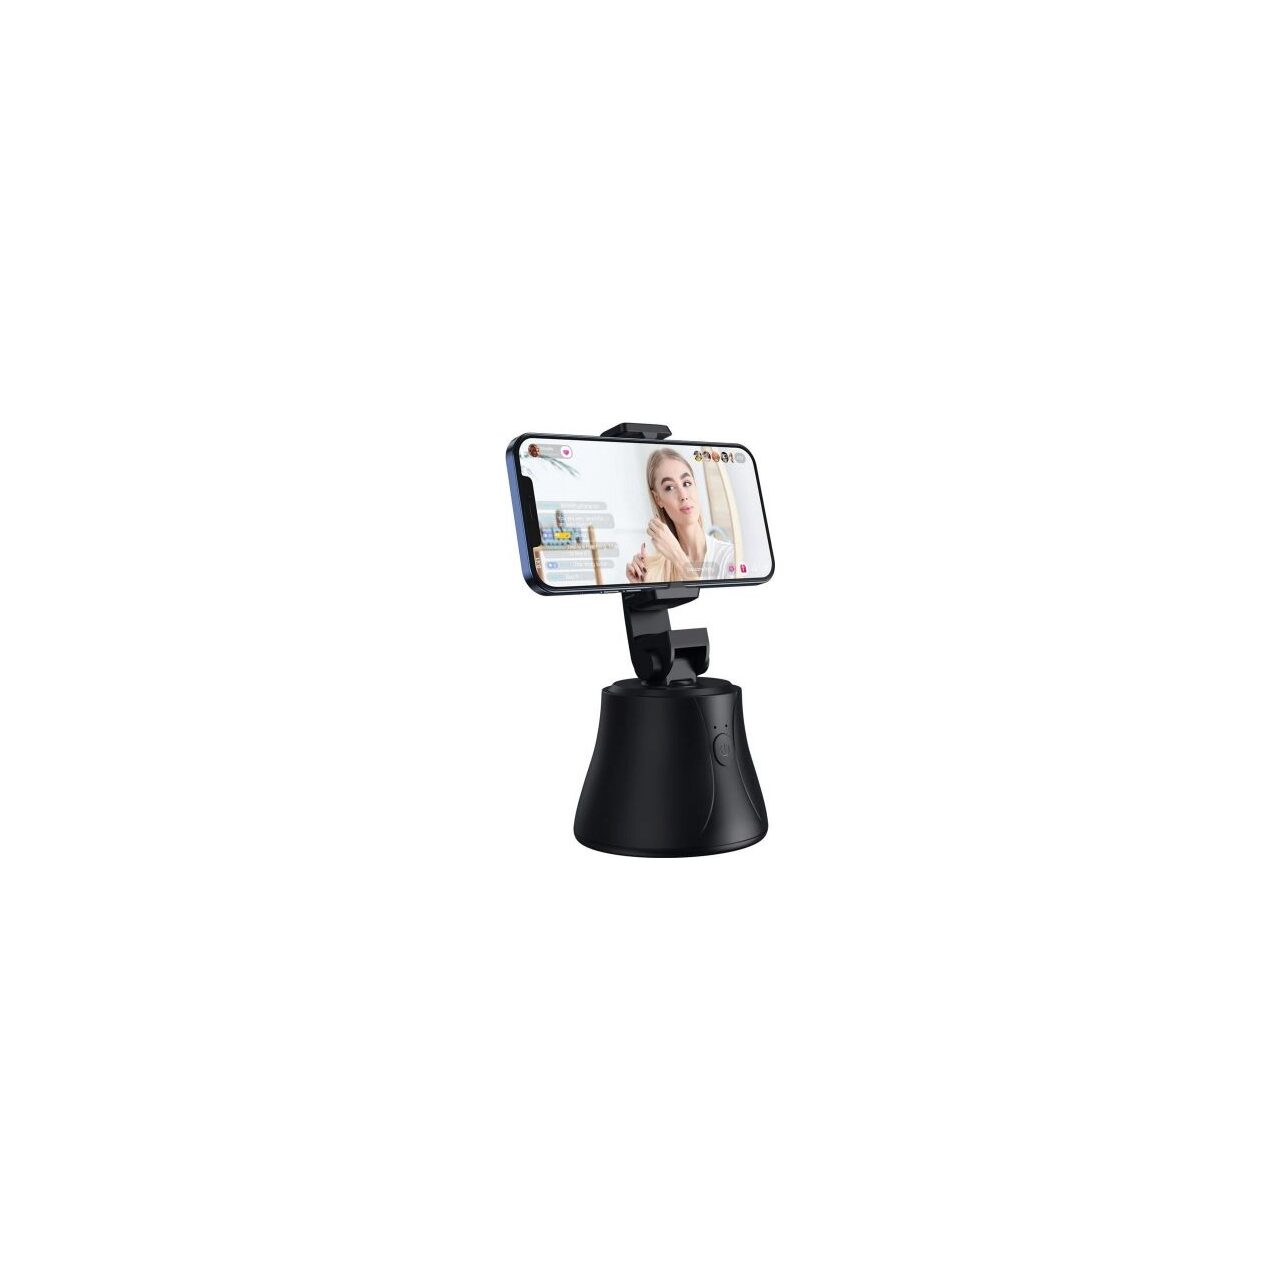 Accesorii Camere Video Sport - Suport cu functie de selfie stick Baseus Tripod Head, rotire 360 grade, recunoastere faciala, Bluetooth 5.0, Negru